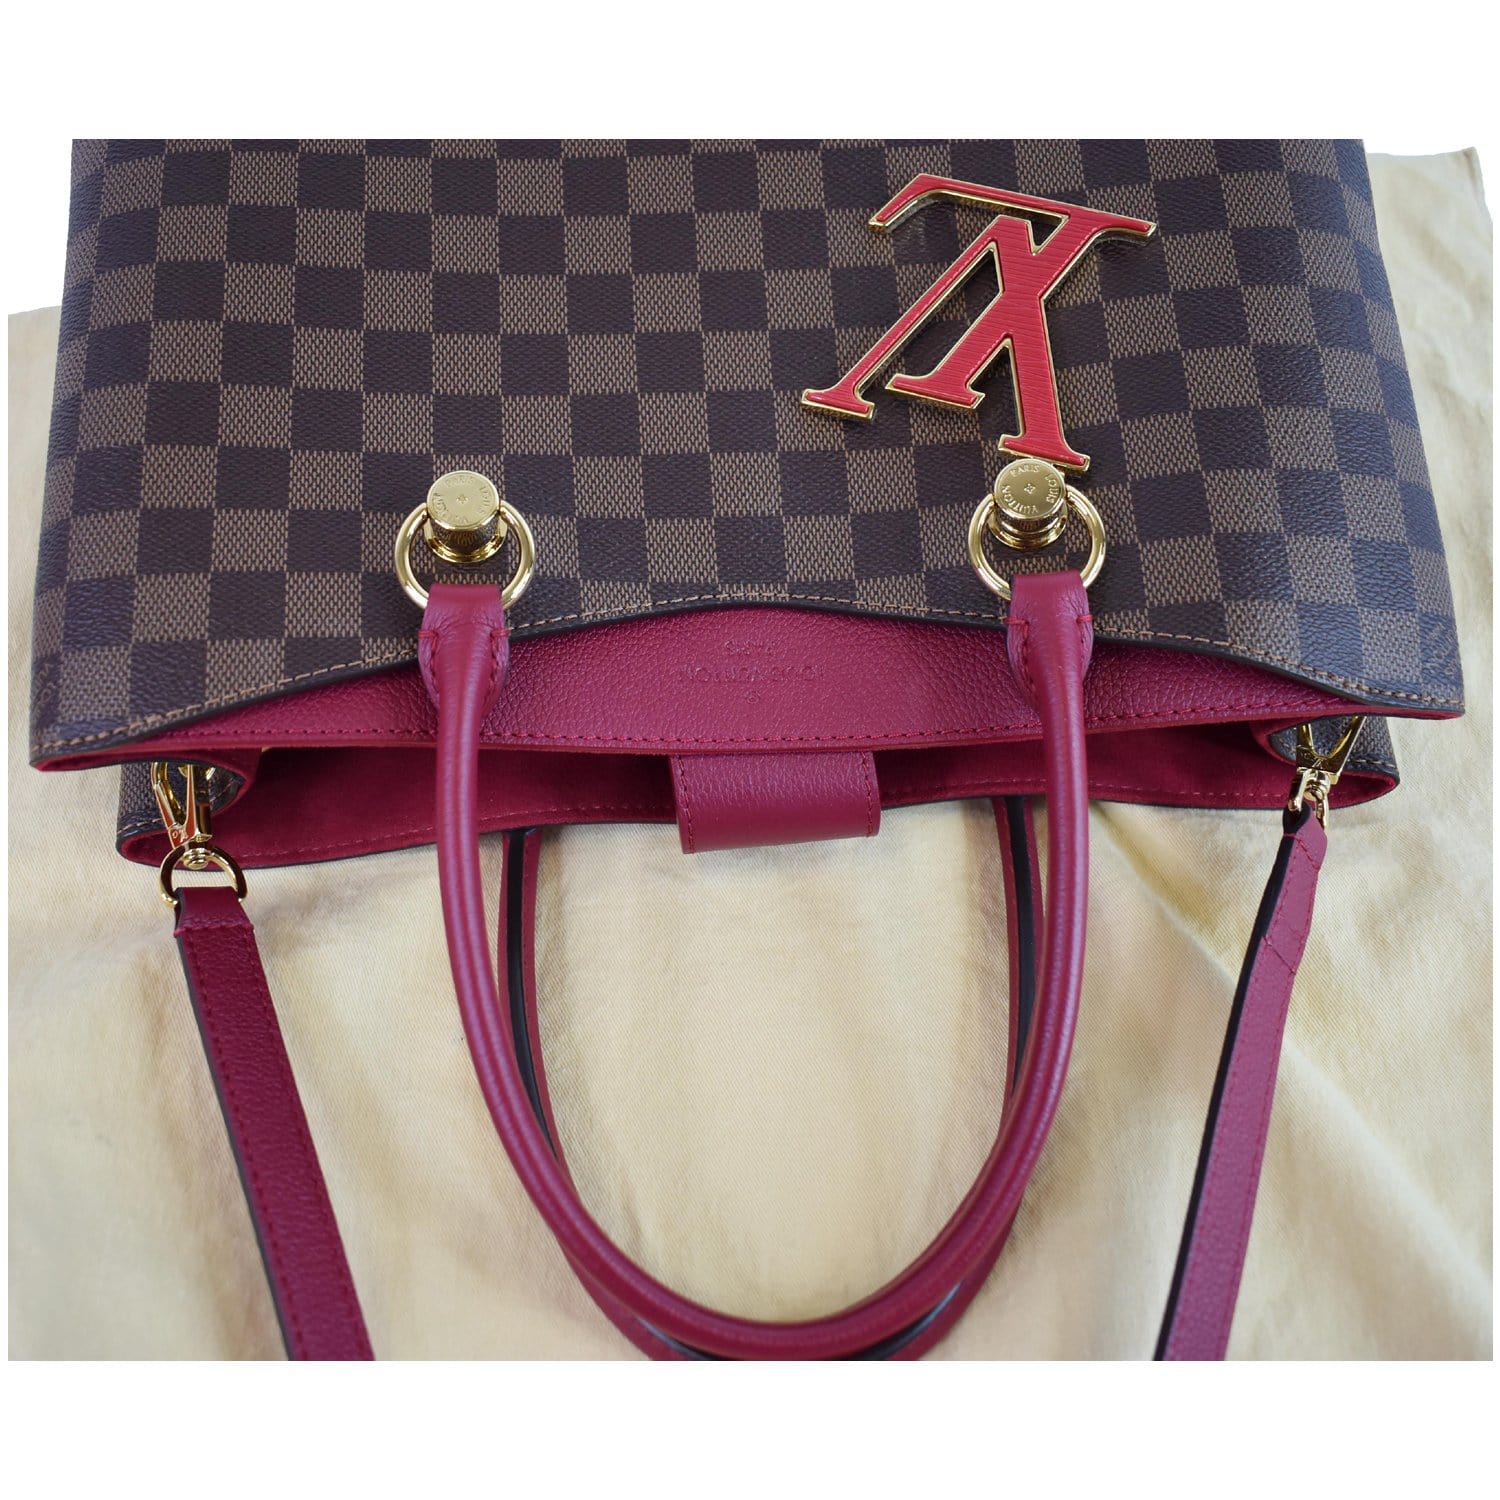 How to Spot a Fake Louis Vuitton Handbag?  Borse louis vuitton, Borse,  Borsa louis vuitton